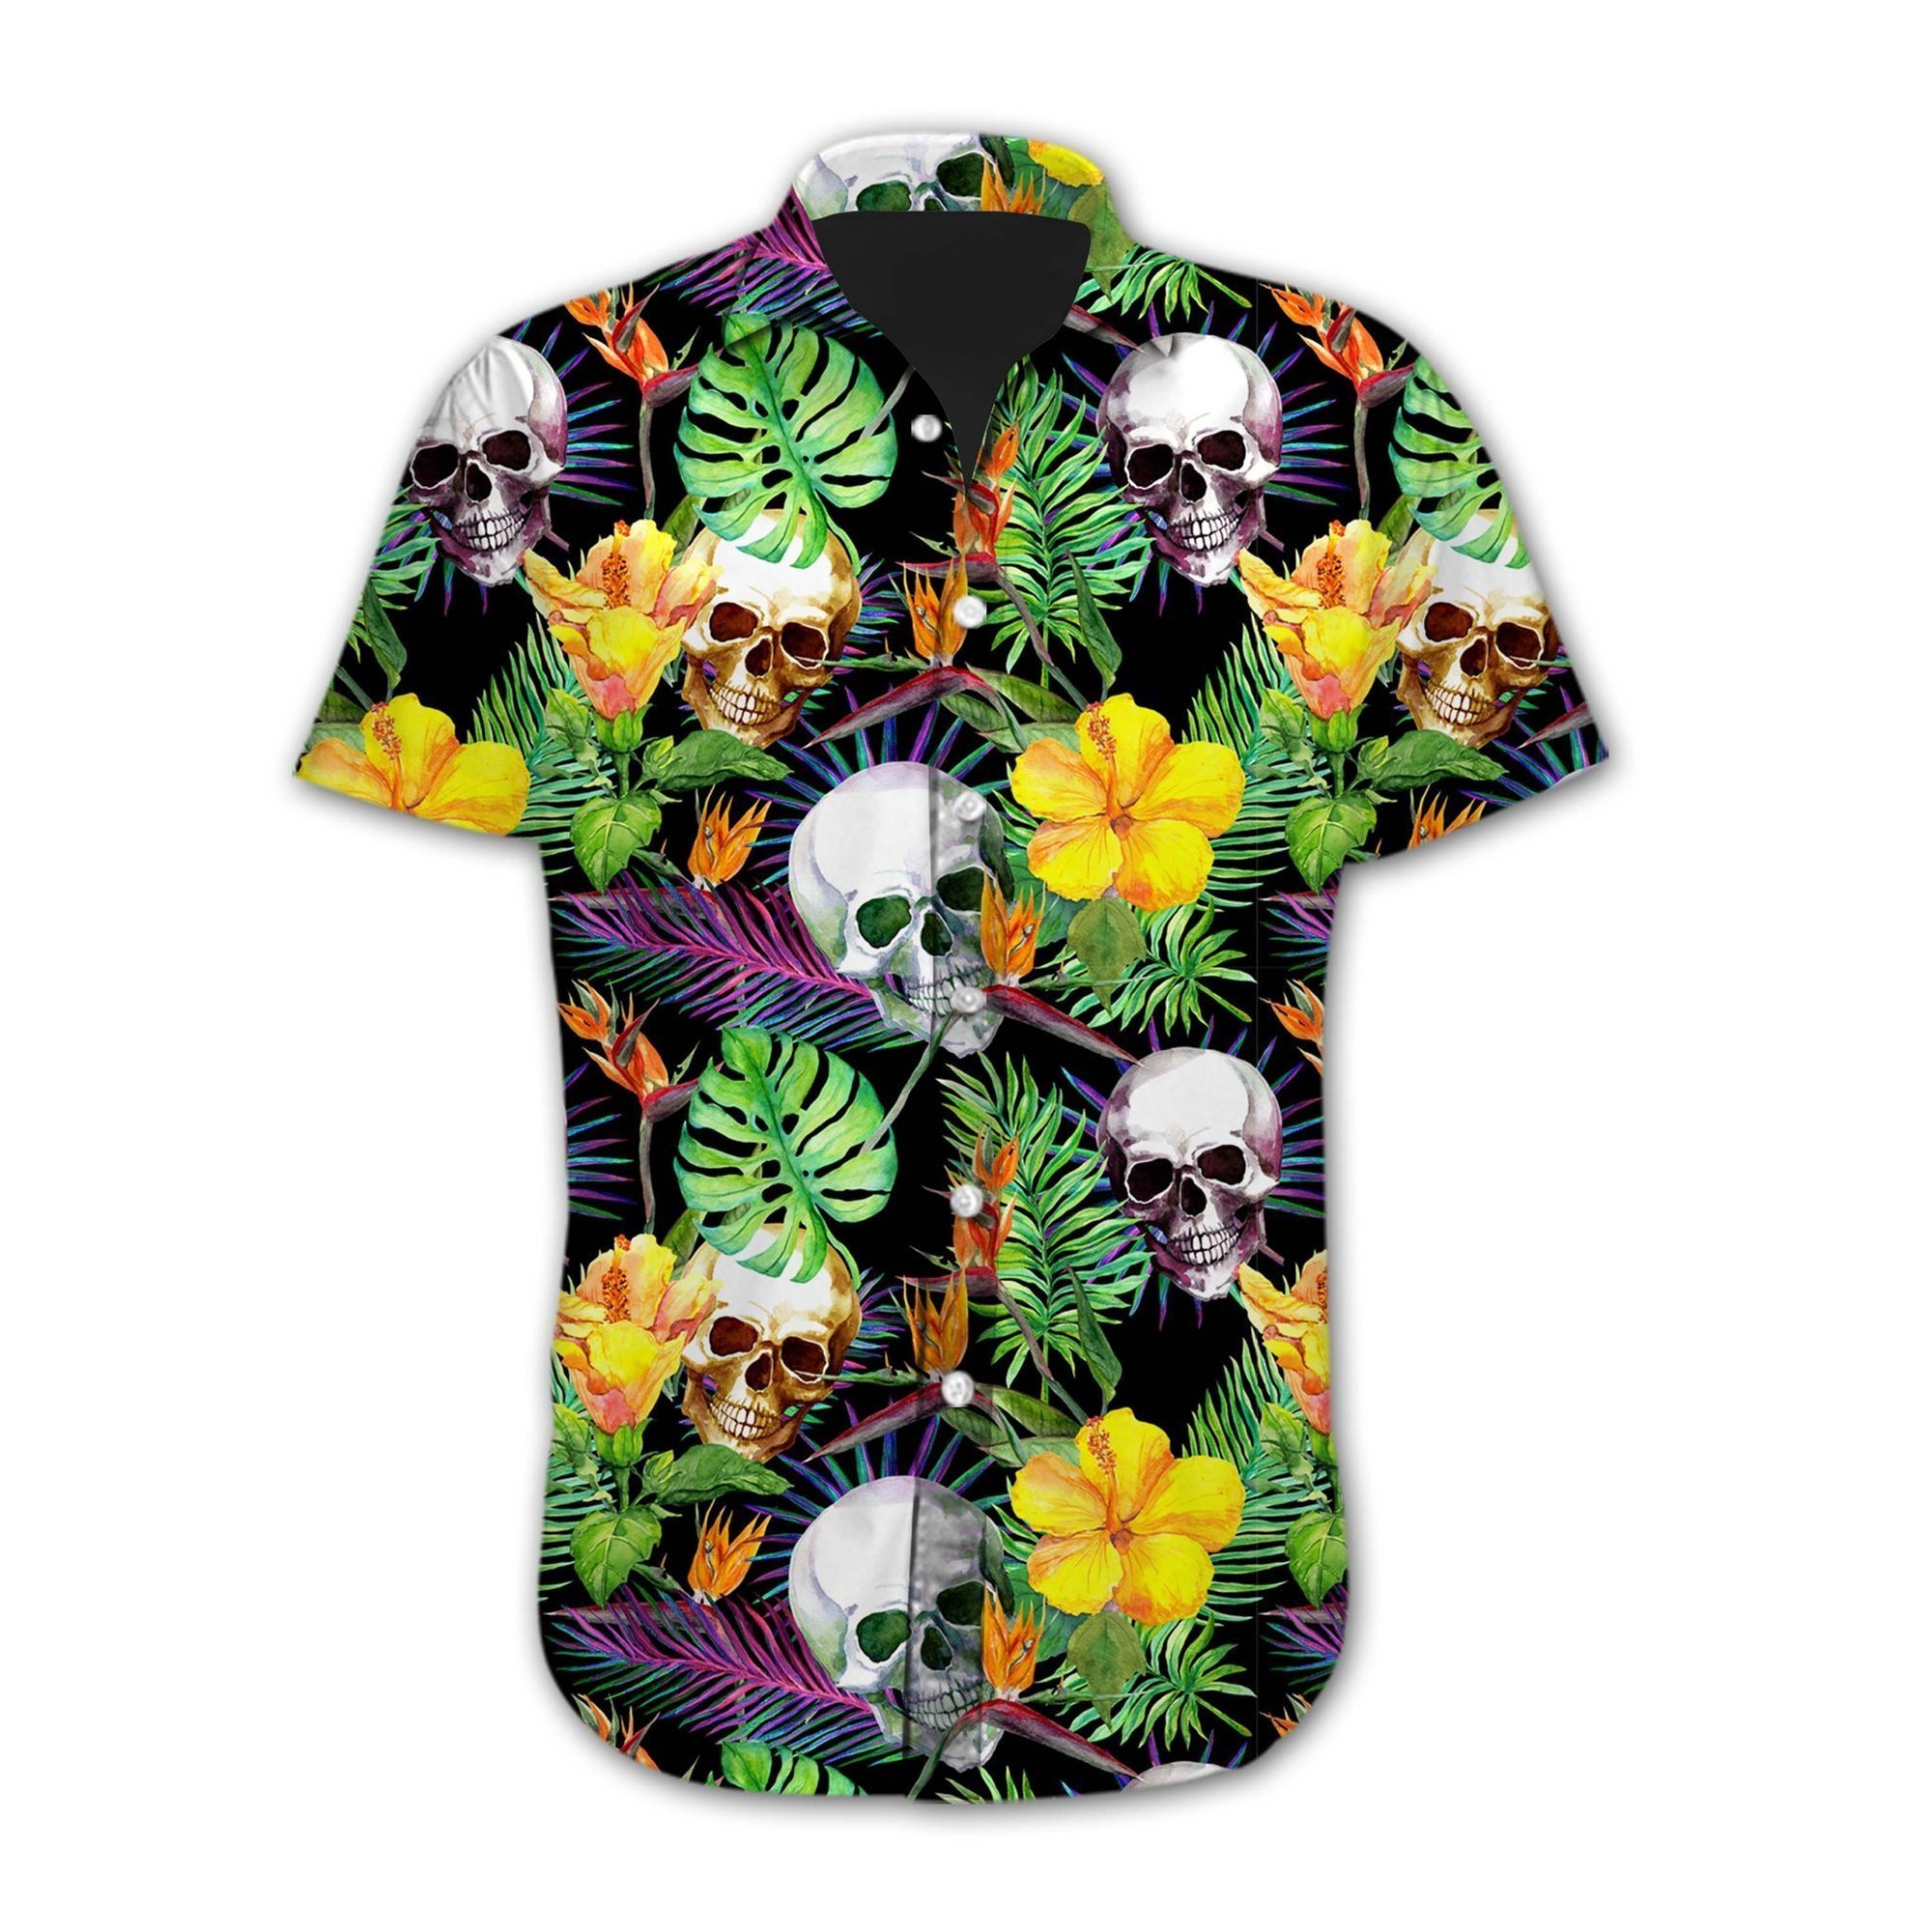 Skull Hawaiian Shirt For Men Women Adult Hw1689-1